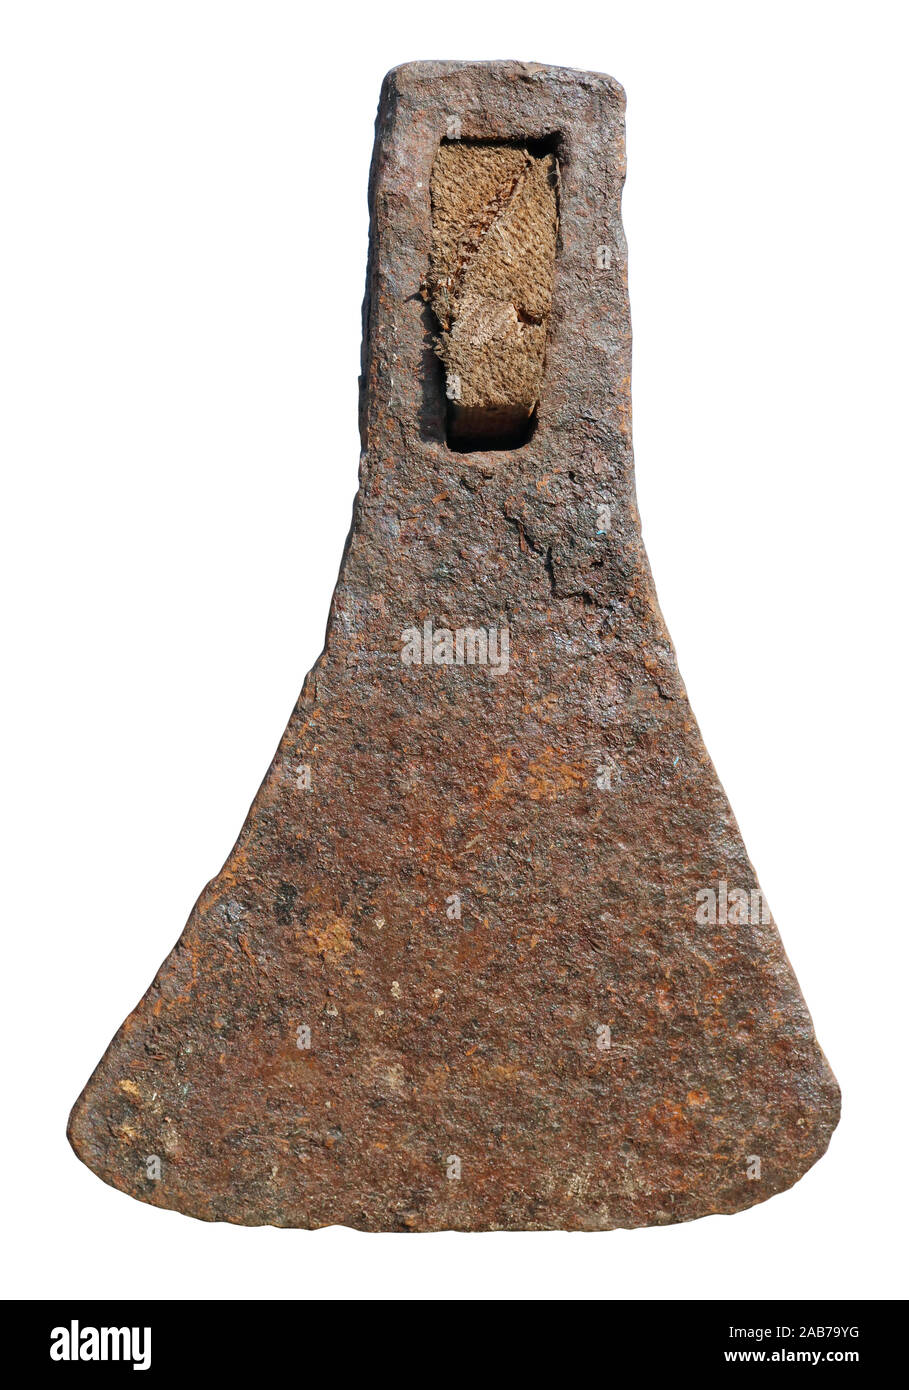 Un fer rouillé ax a été forgé par un forgeron il y a 150 ans. Isolé sur disque du soleil blanc macro image Banque D'Images